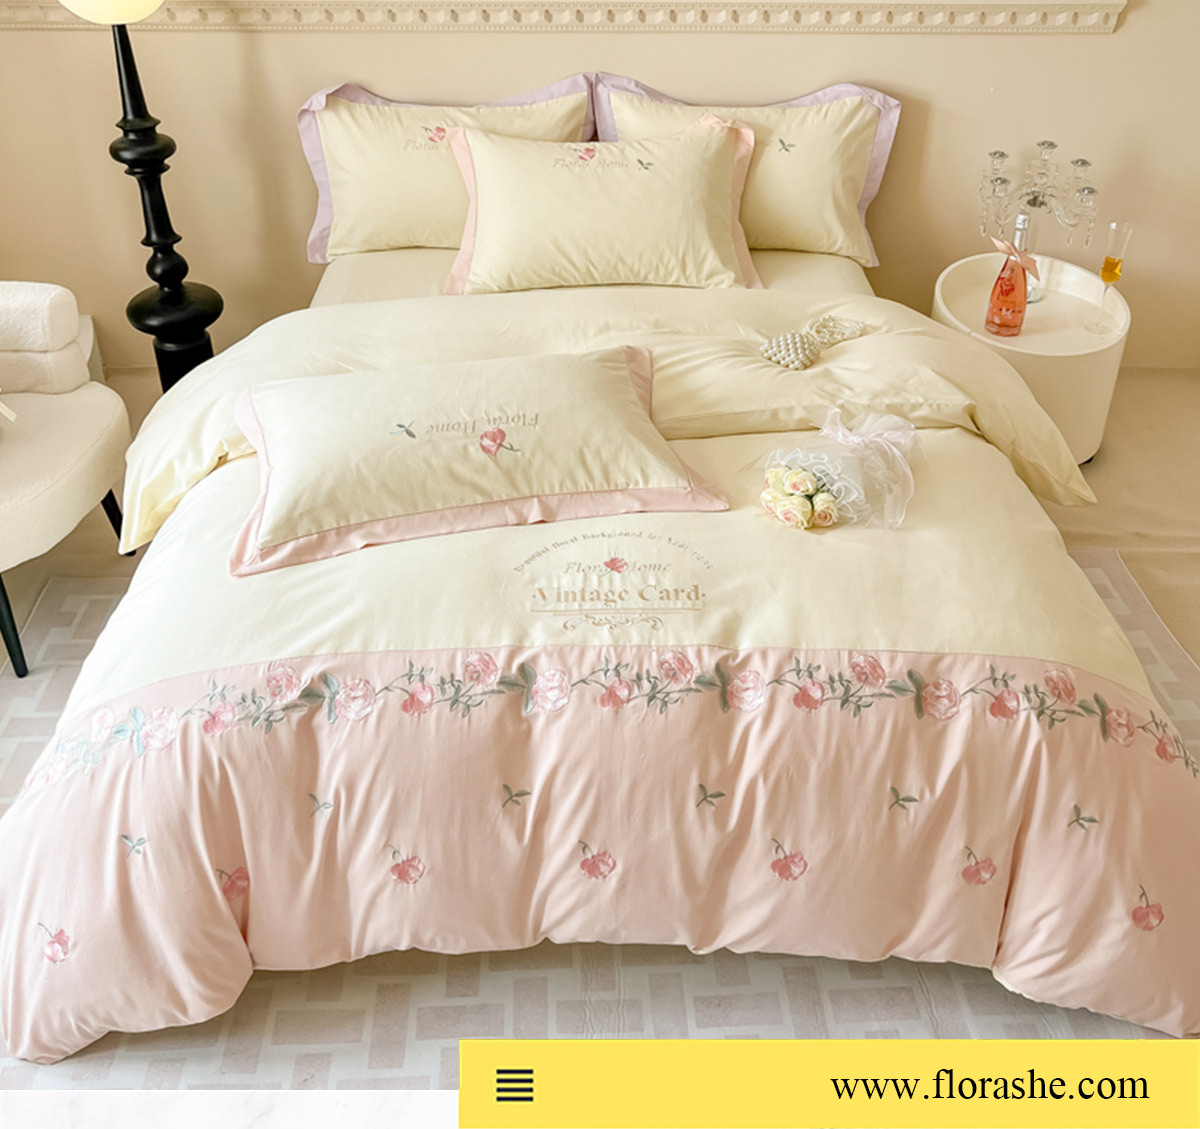 Vintage-Floral-Soft-Brushed-Cotton-Embroidery-Bedsheets-Set26